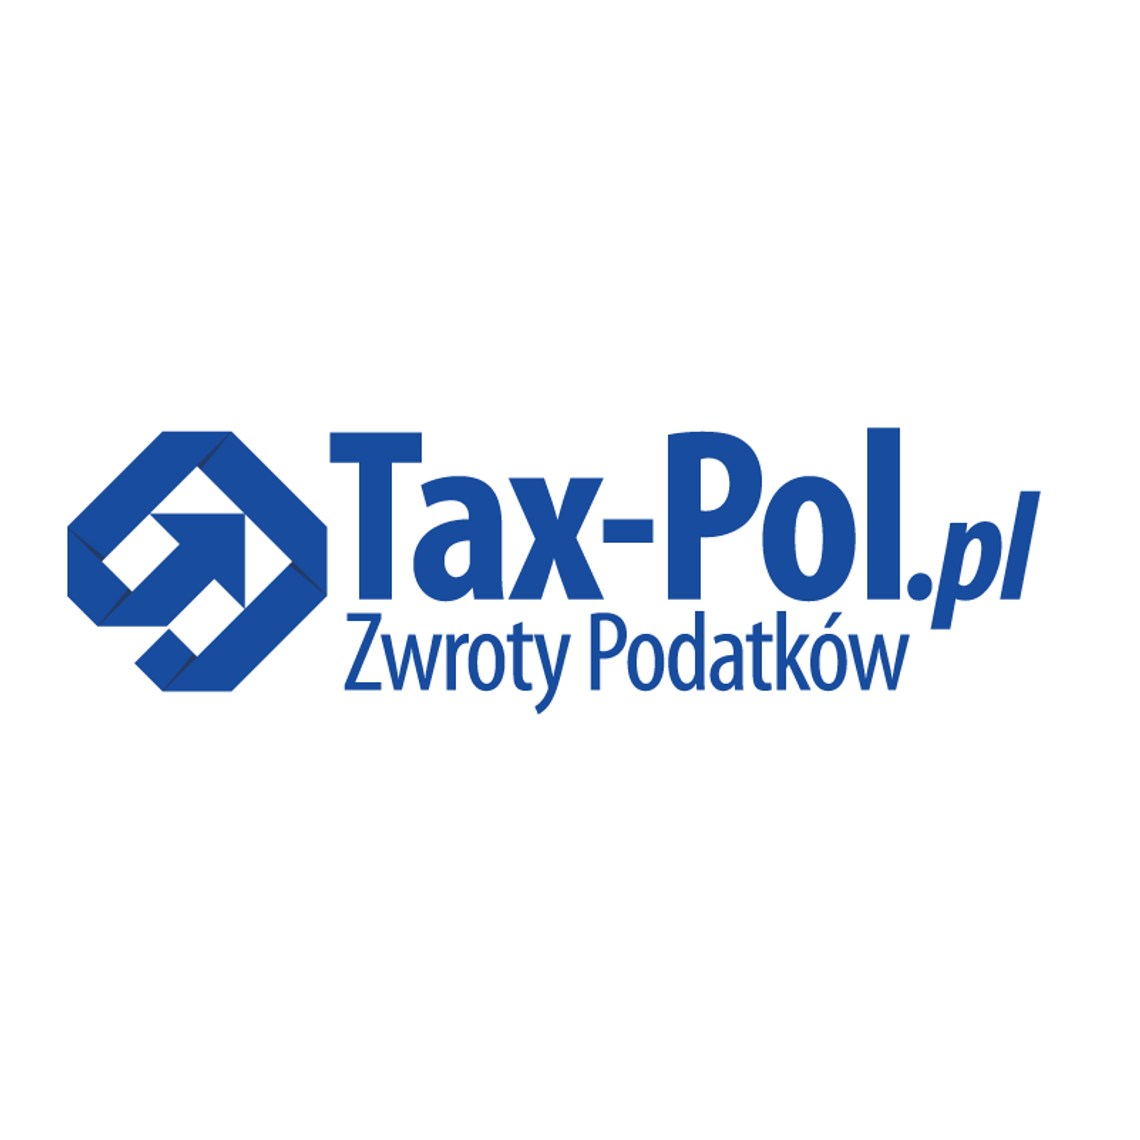 Tax- Pol - zwrot podatku z Niemiec, Holandii, Anglii czy Belgii